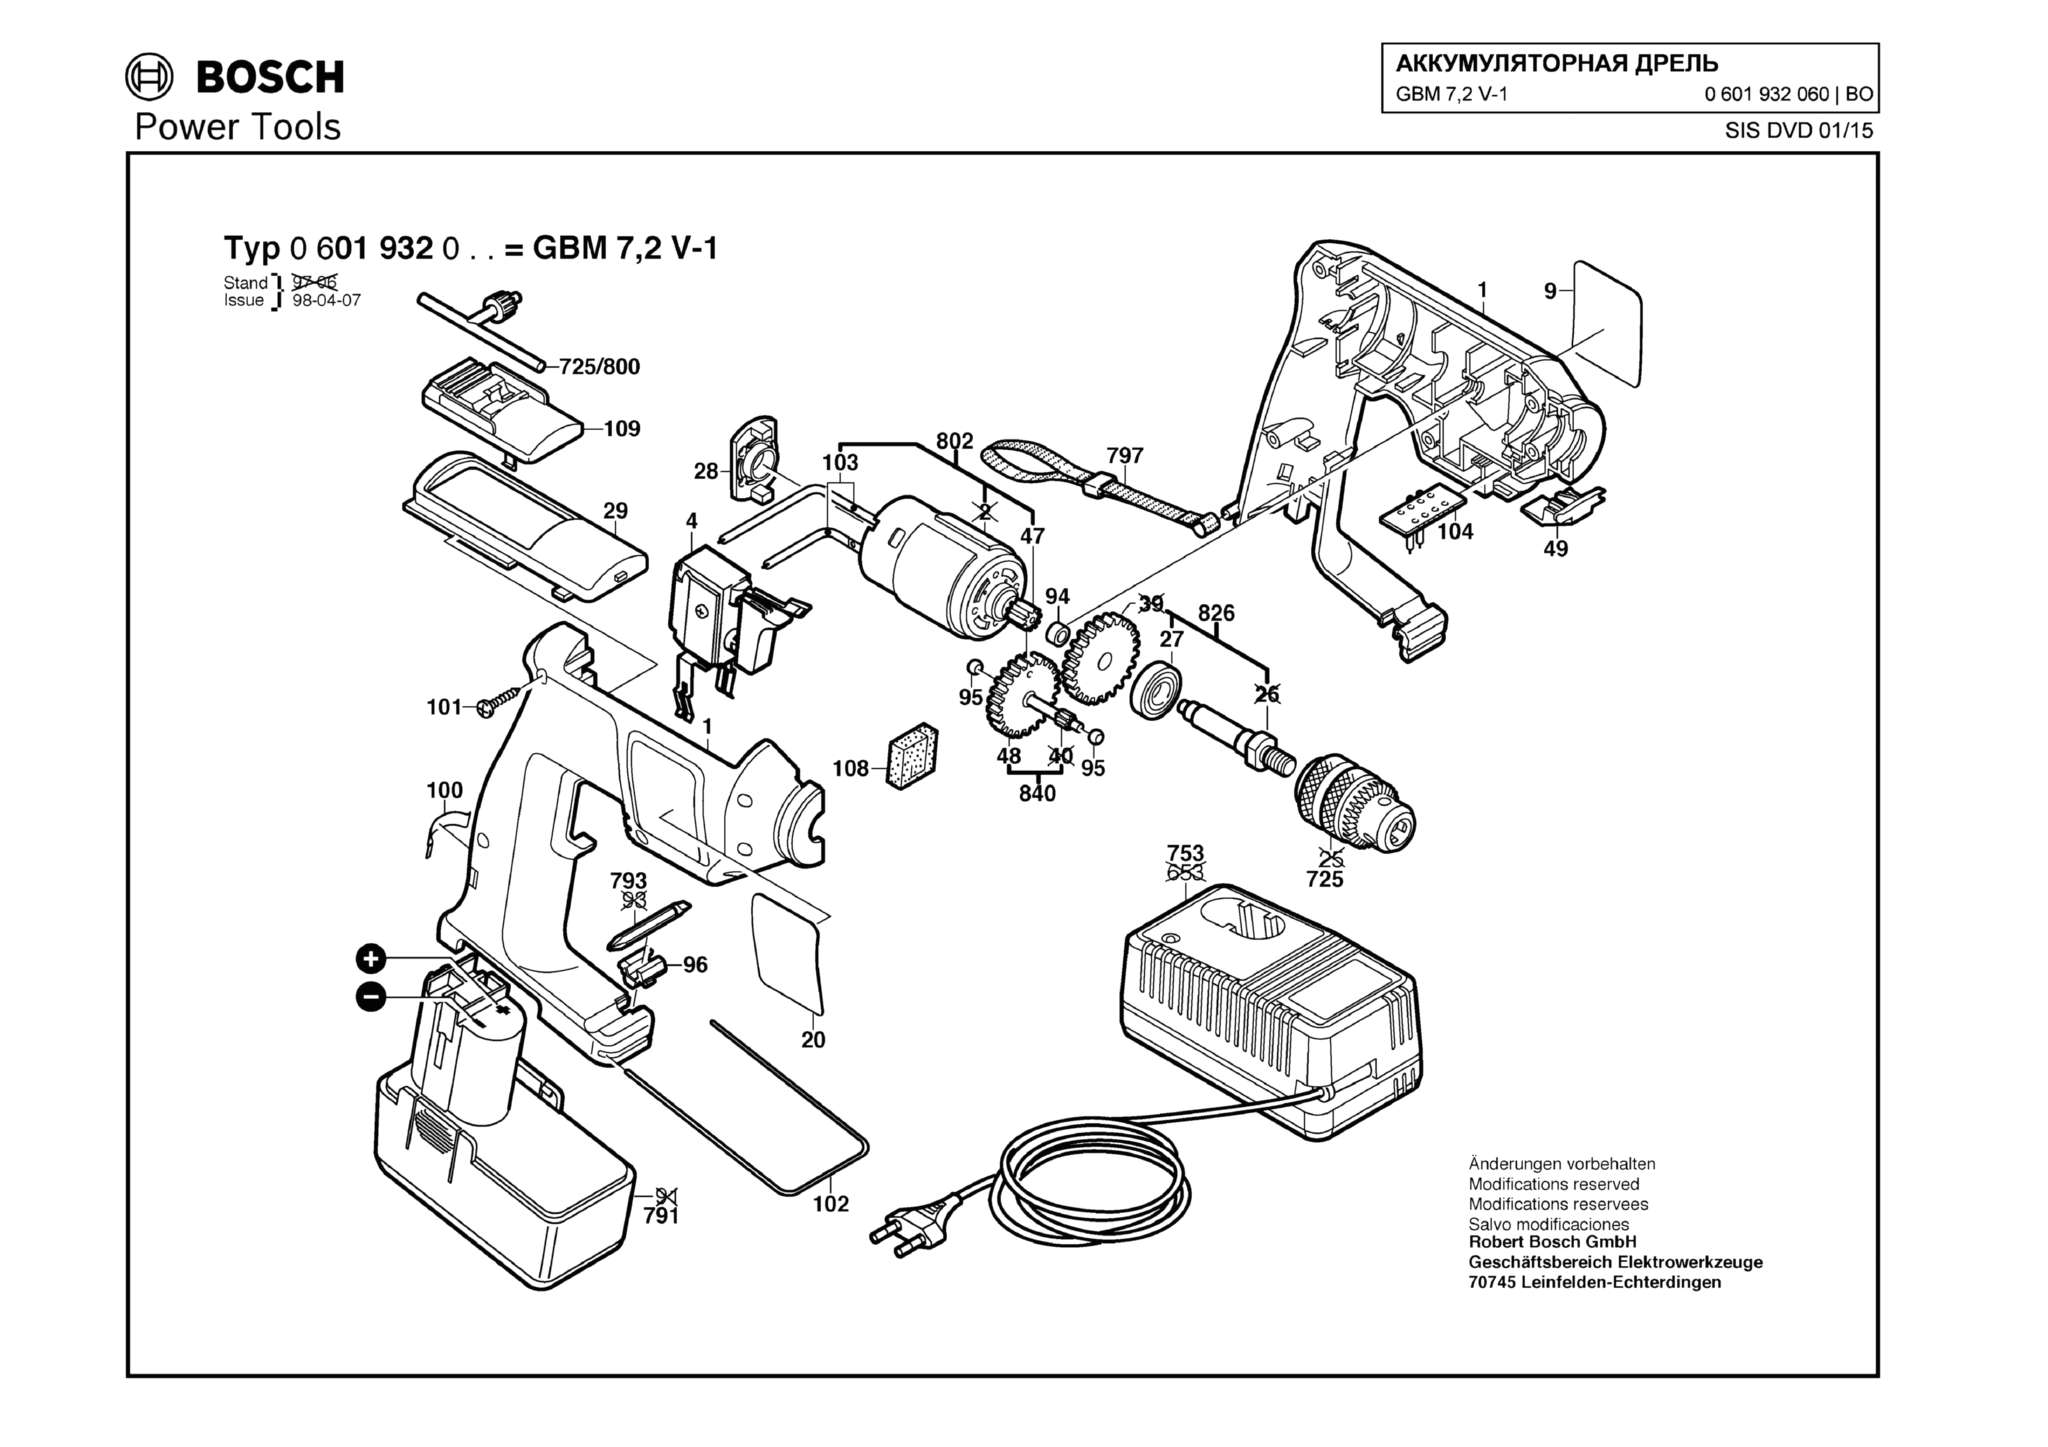 Запчасти, схема и деталировка Bosch GBM 7,2 V-1 (ТИП 0601932060)